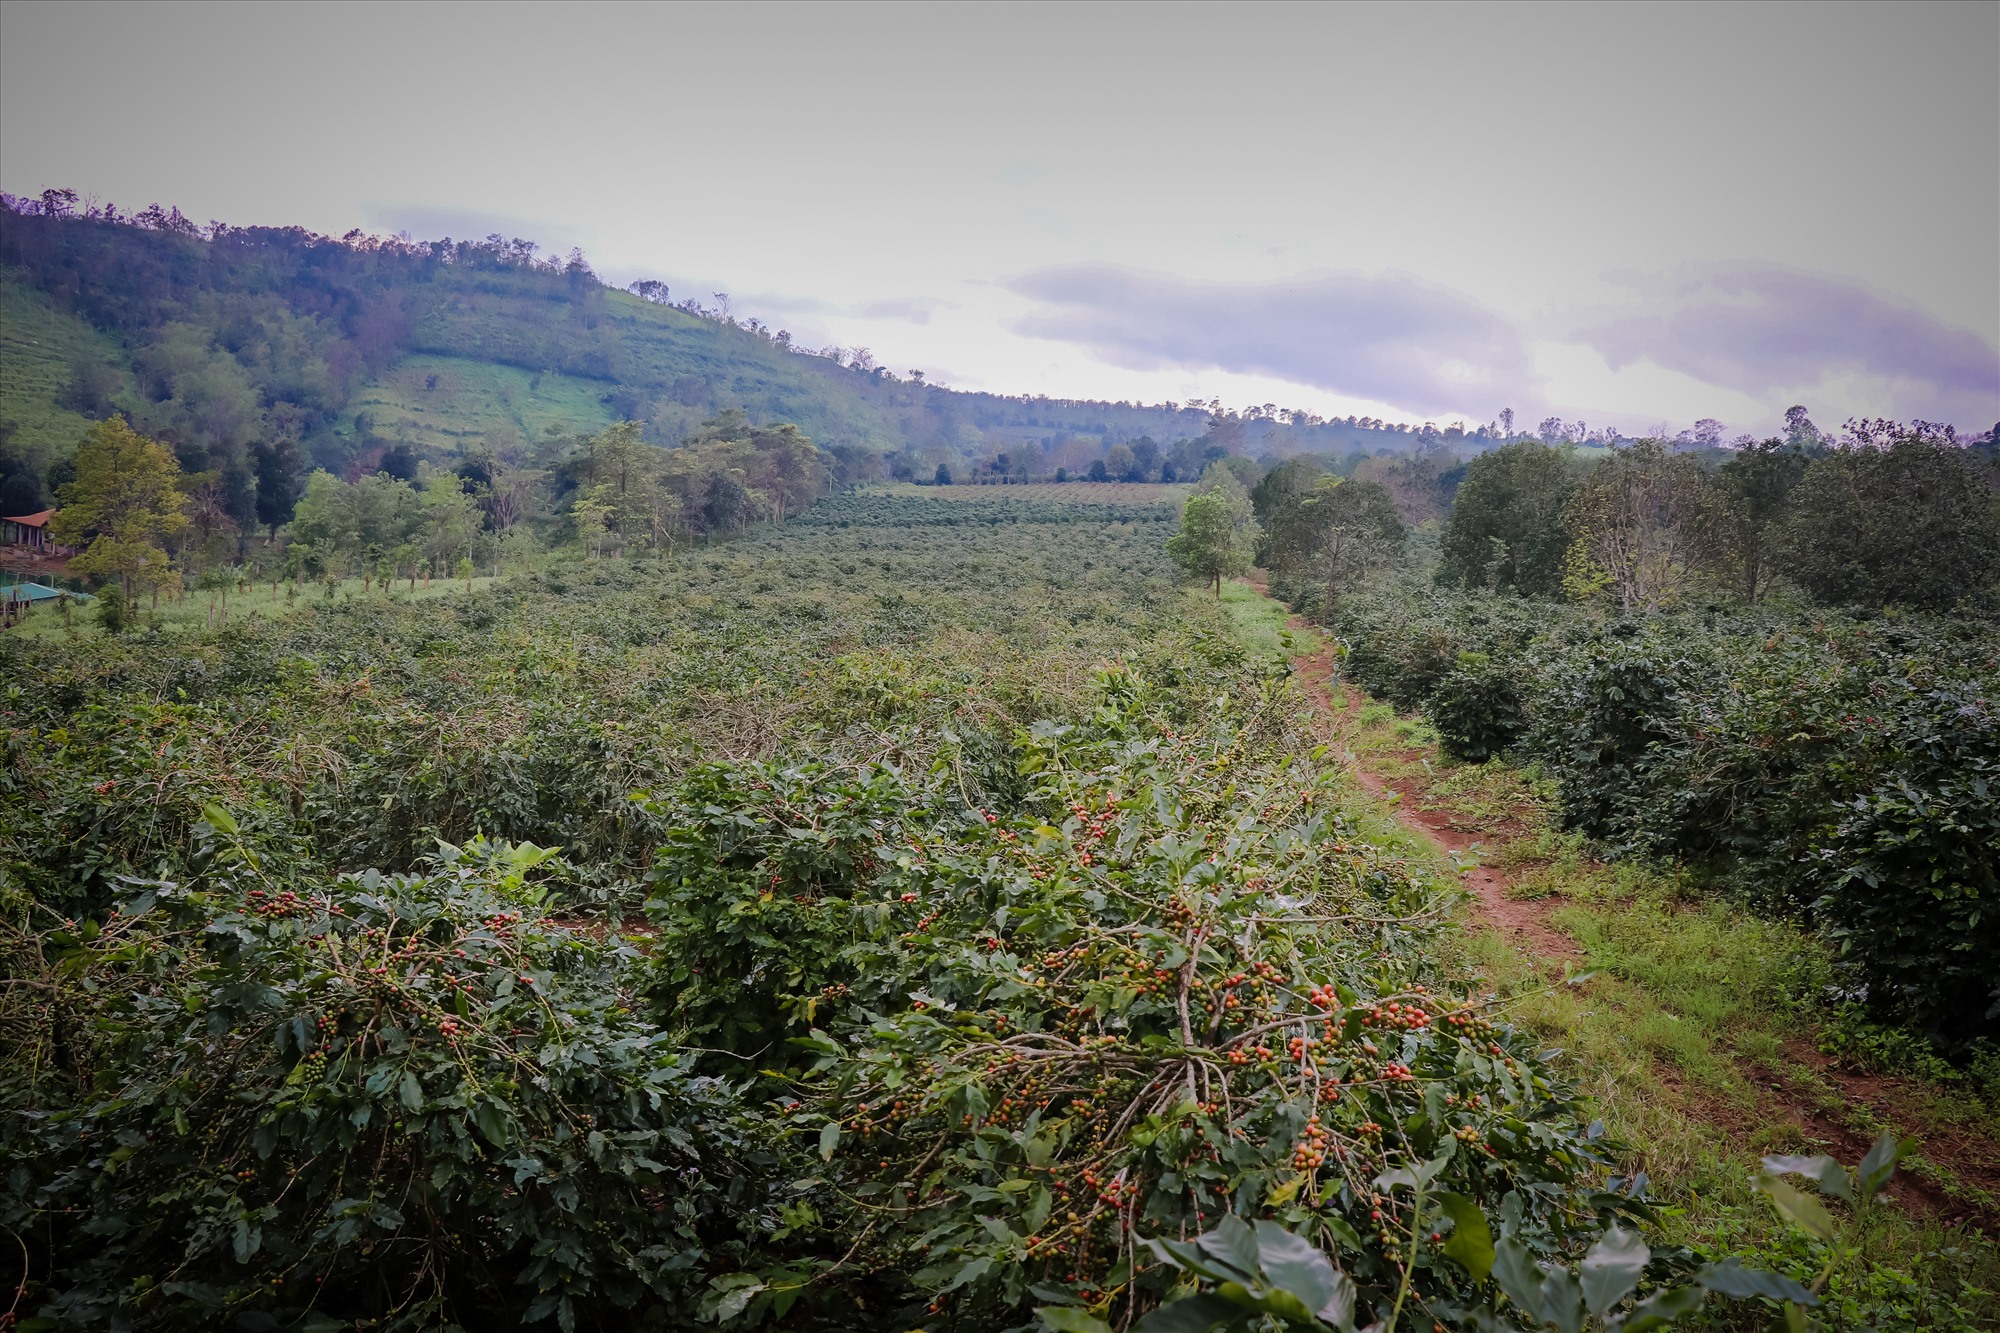 Trên toàn huyện Hướng hóa, hiện có khoảng 5.000 ha trồng cây cà phê (chủ yếu là cà phê Arabica).